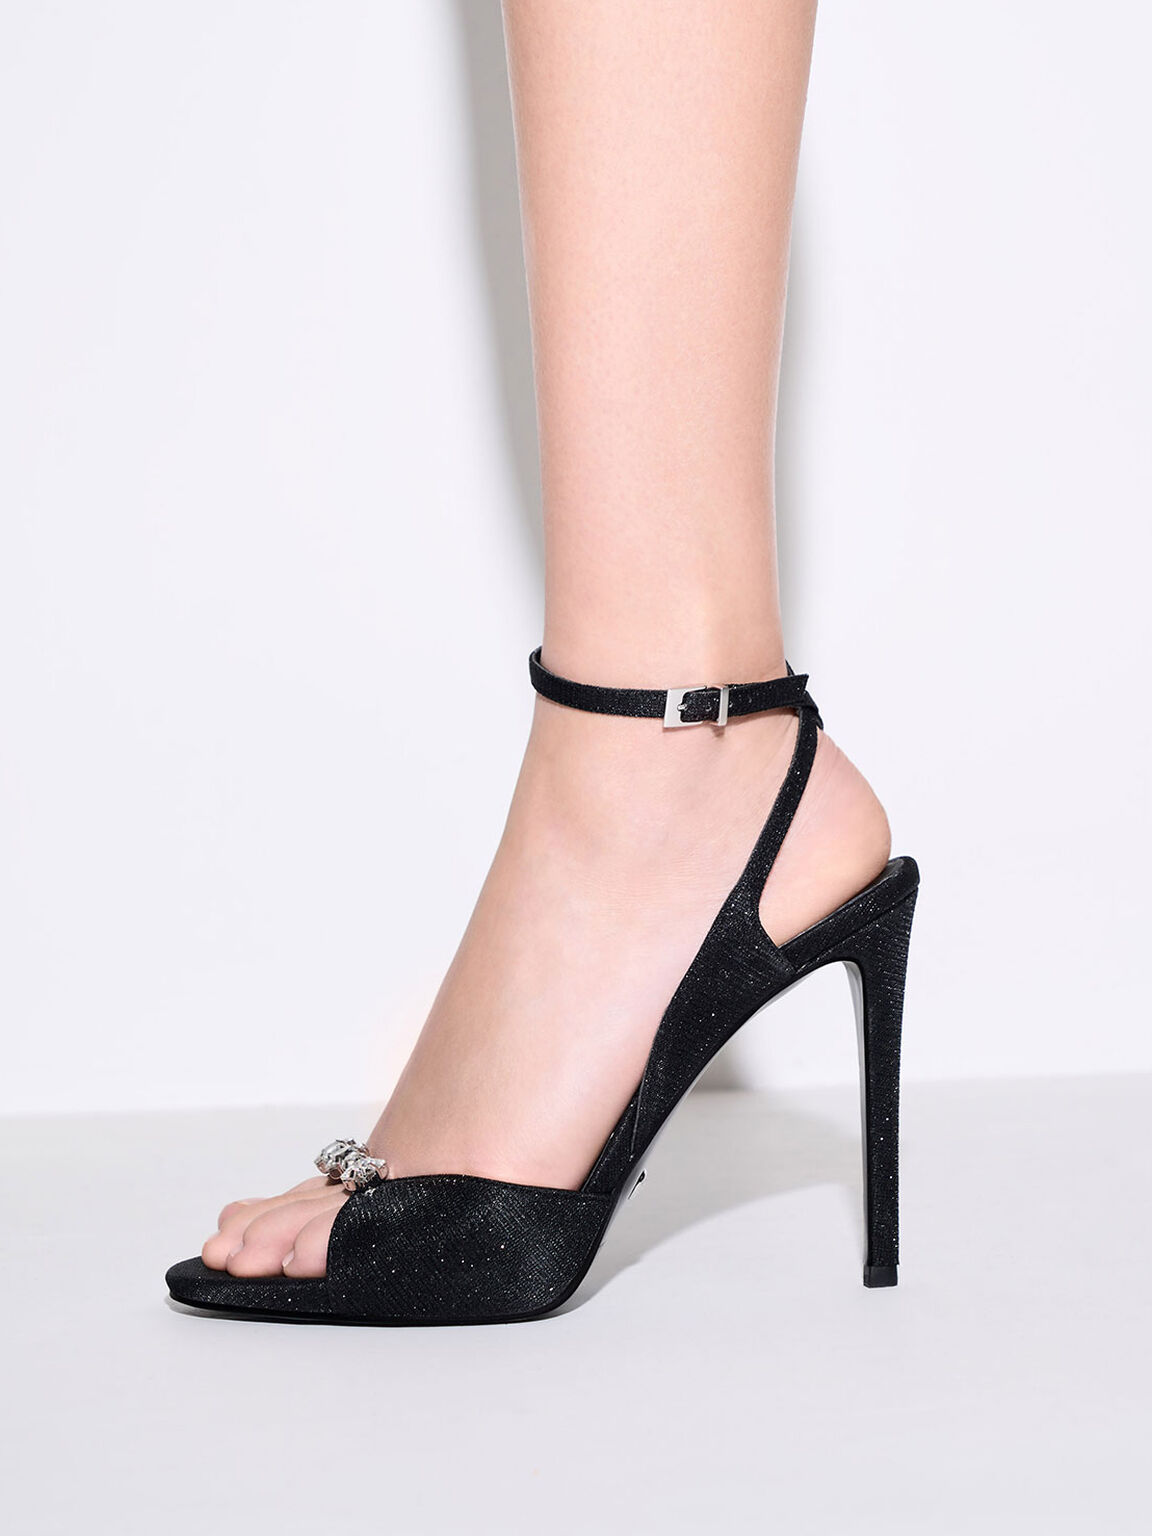 Sandal Ankle Strap Glittered Gem-Encrusted, Black, hi-res